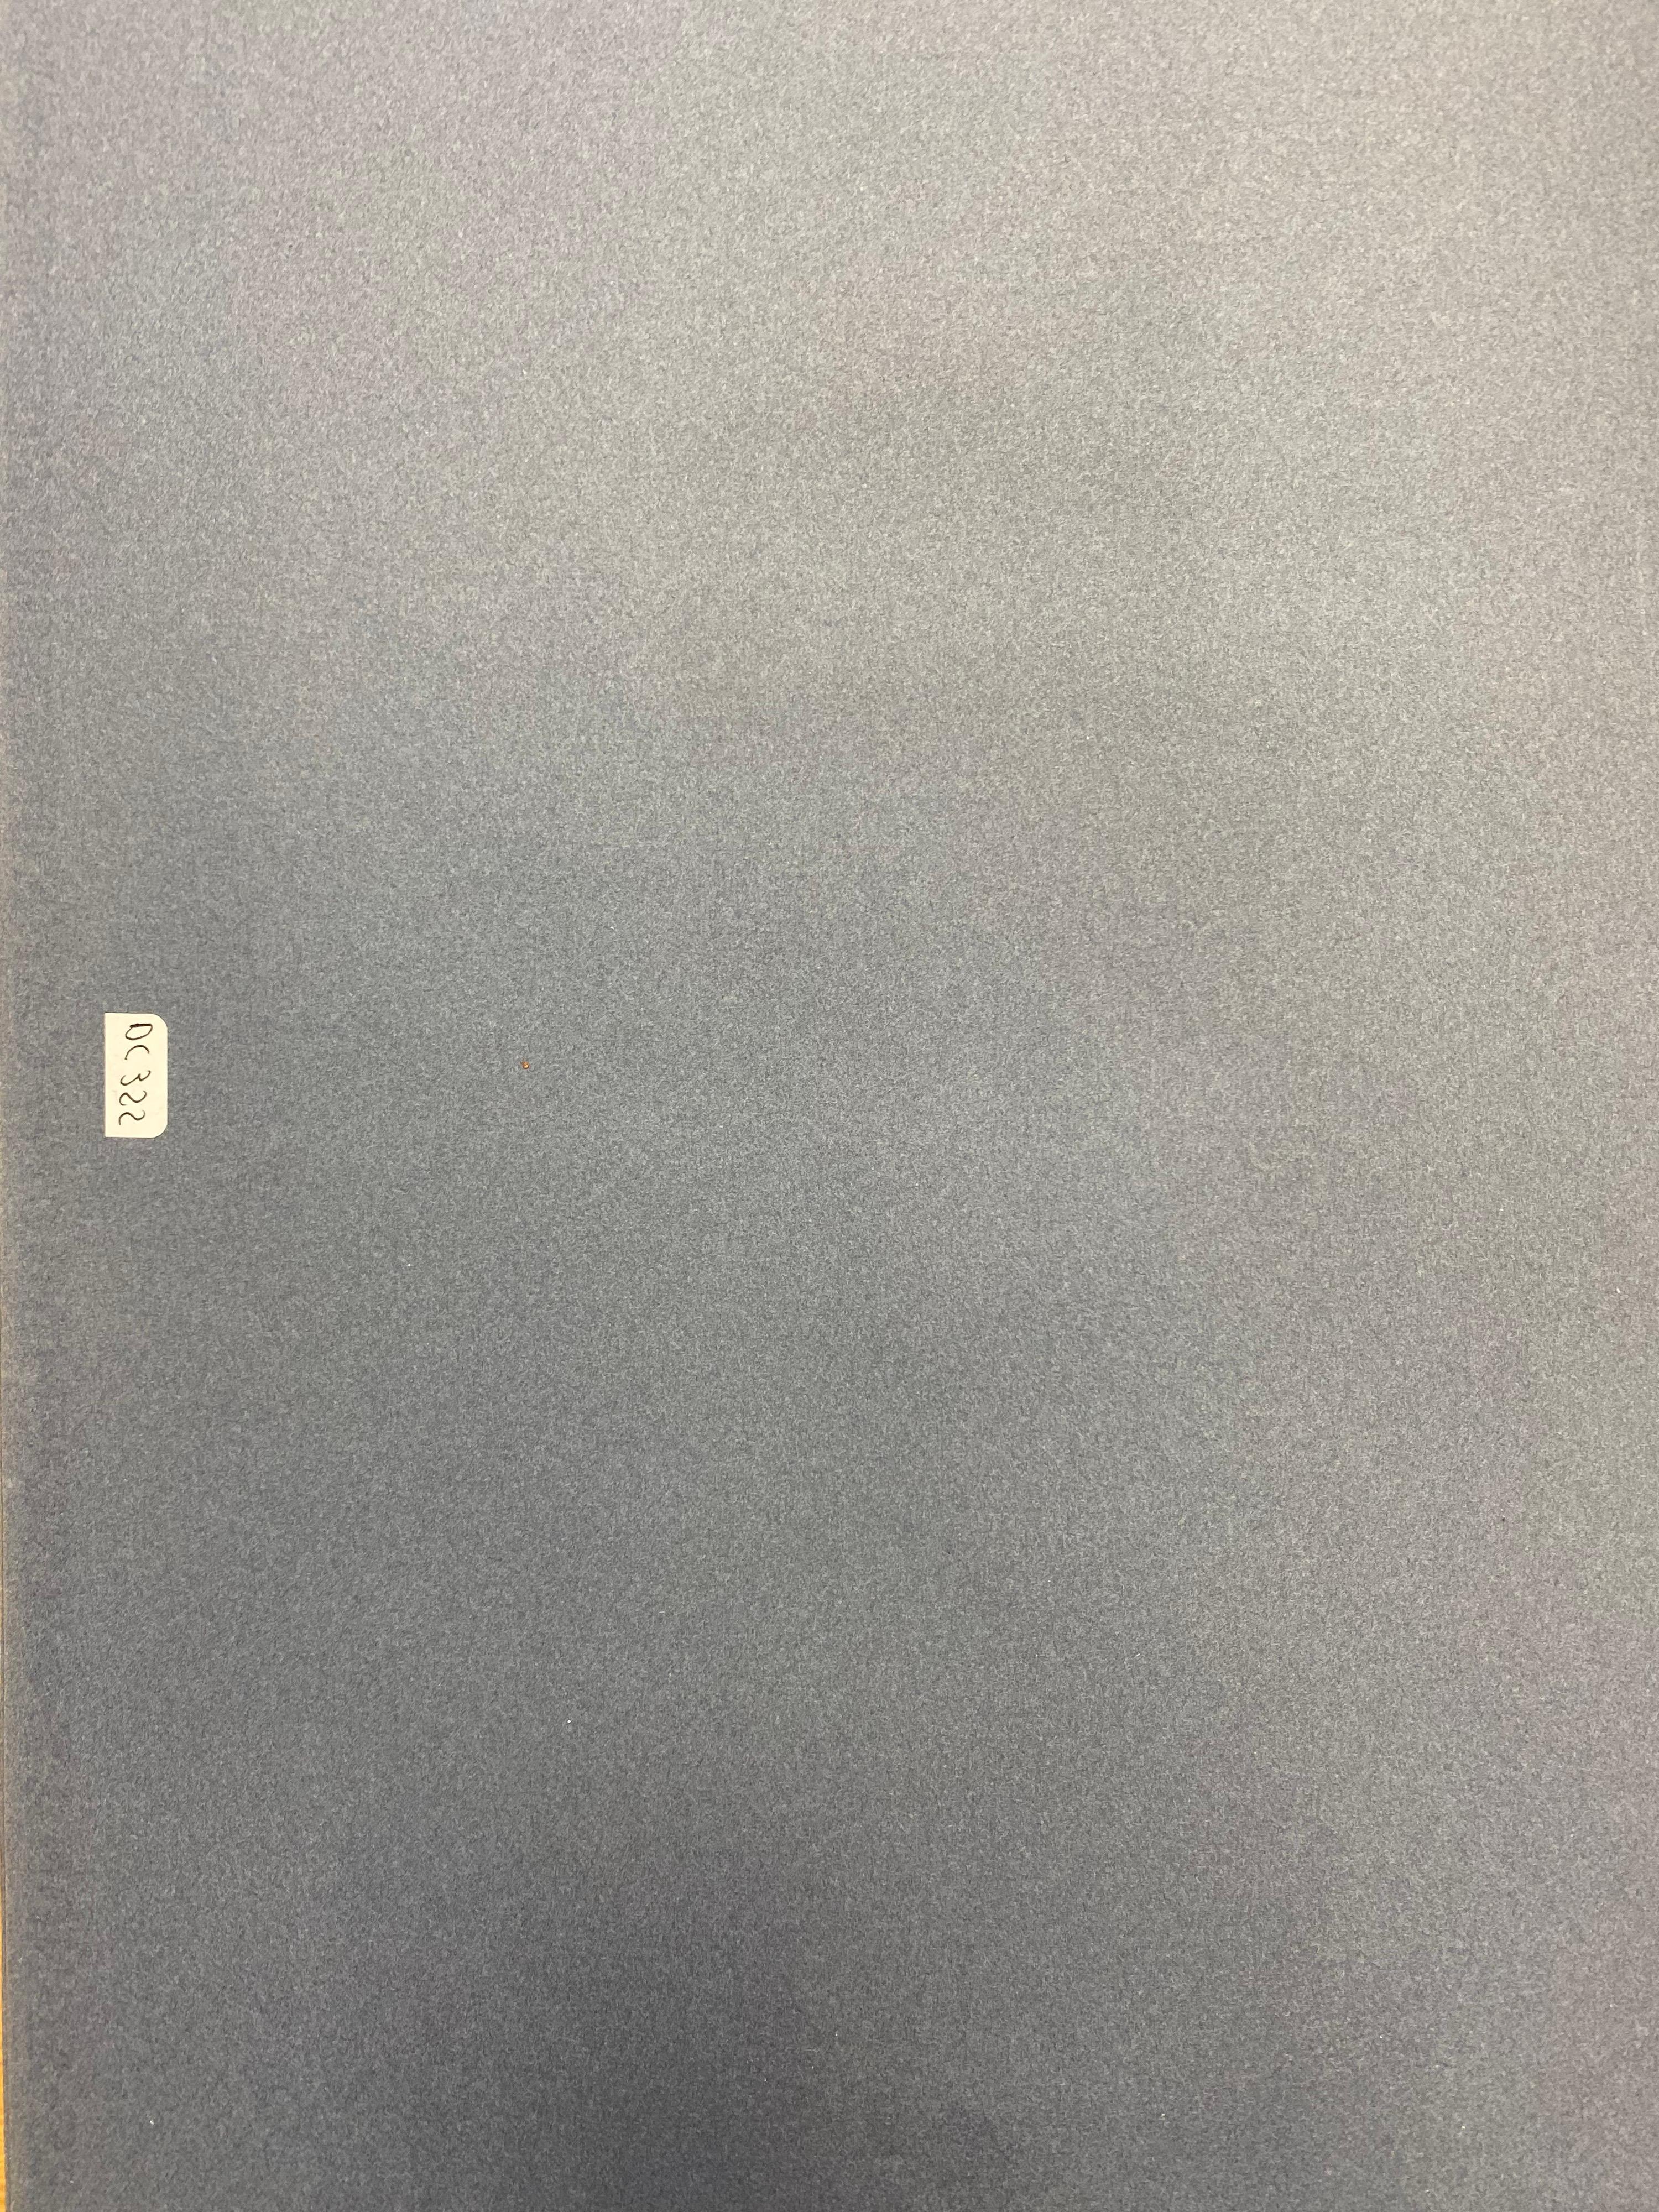 L'anatomie du cheval
par Robert Ladou (français 1929-2014)
dessin original collé sur carte dans une chemise bleue/ papier épais, non encadré
dessin du haut : 7.25 x 9.25 pouces
dessin du bas : 7 x 8.75 pouces
taille totale : 19,75 x 12,75
état :